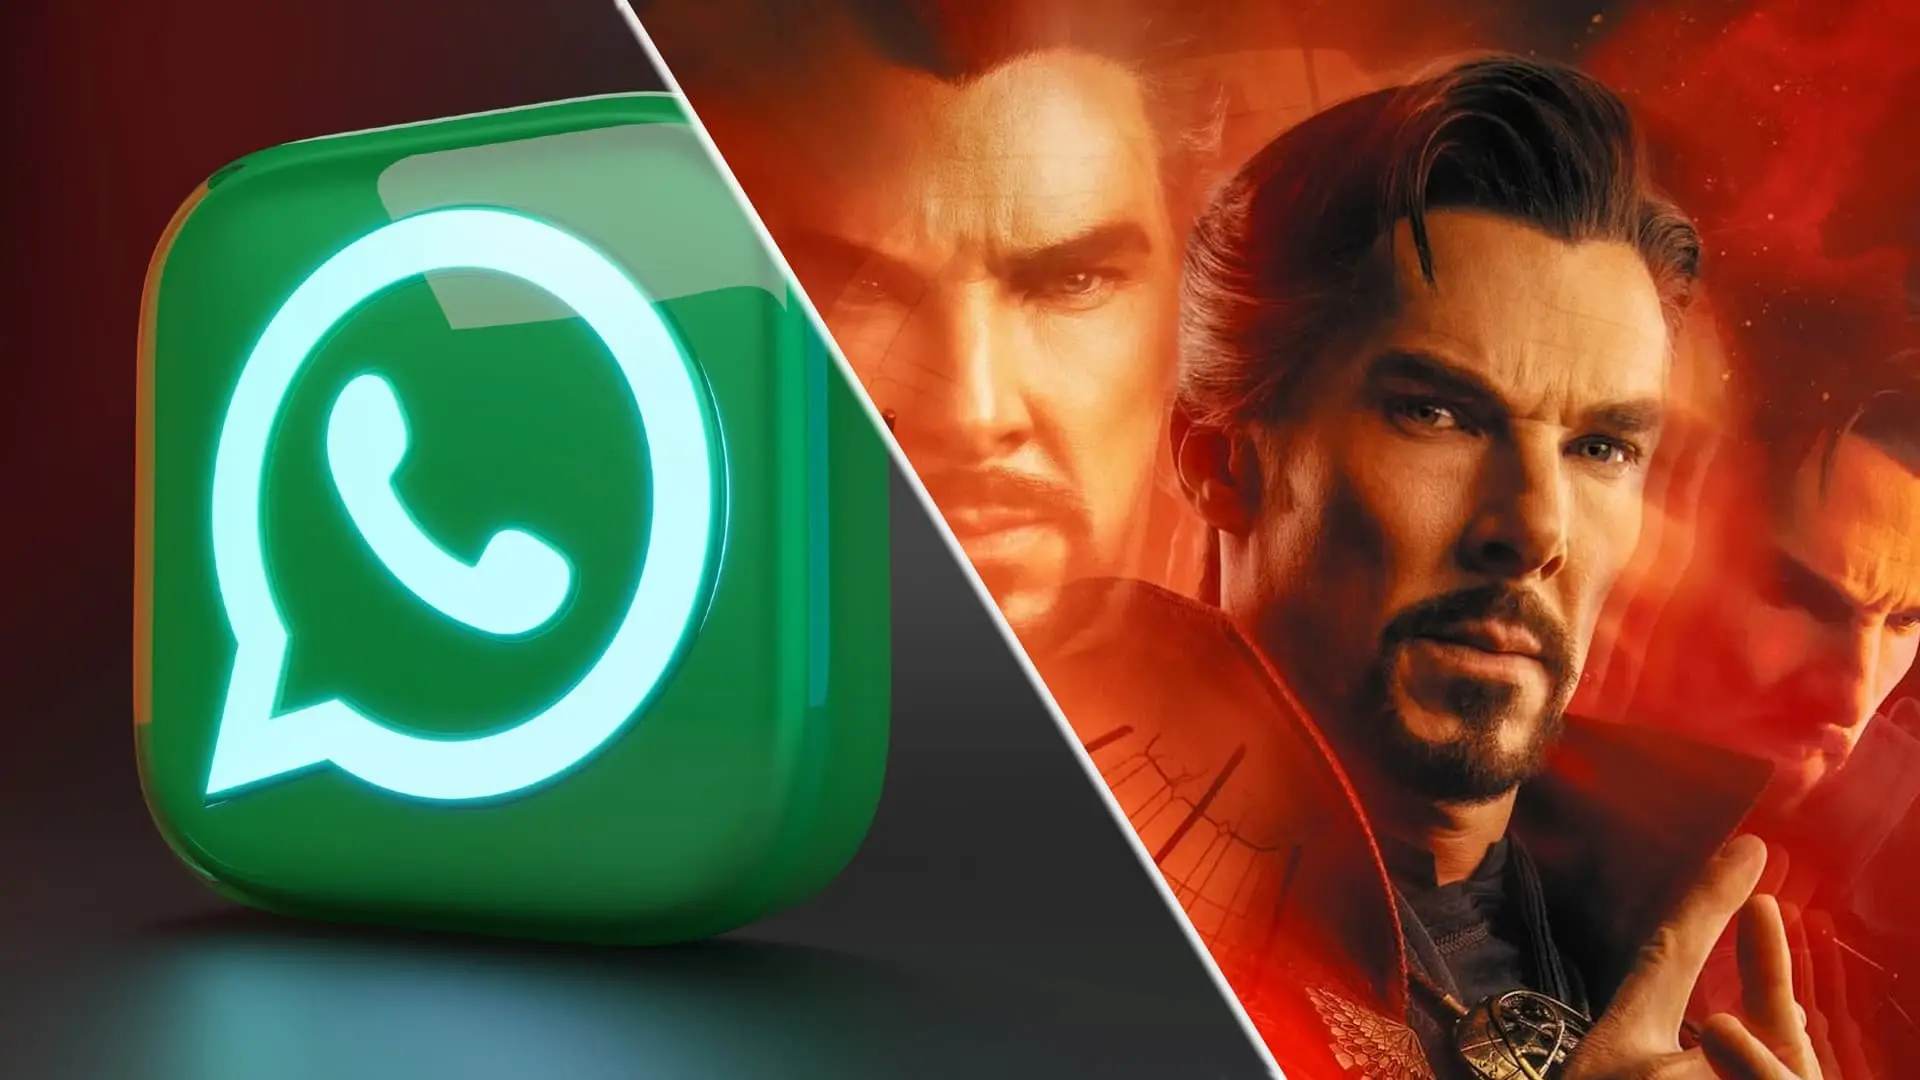 Destaques da semana: WhatsApp aprontando, Marvel Fase 4 e muito mais